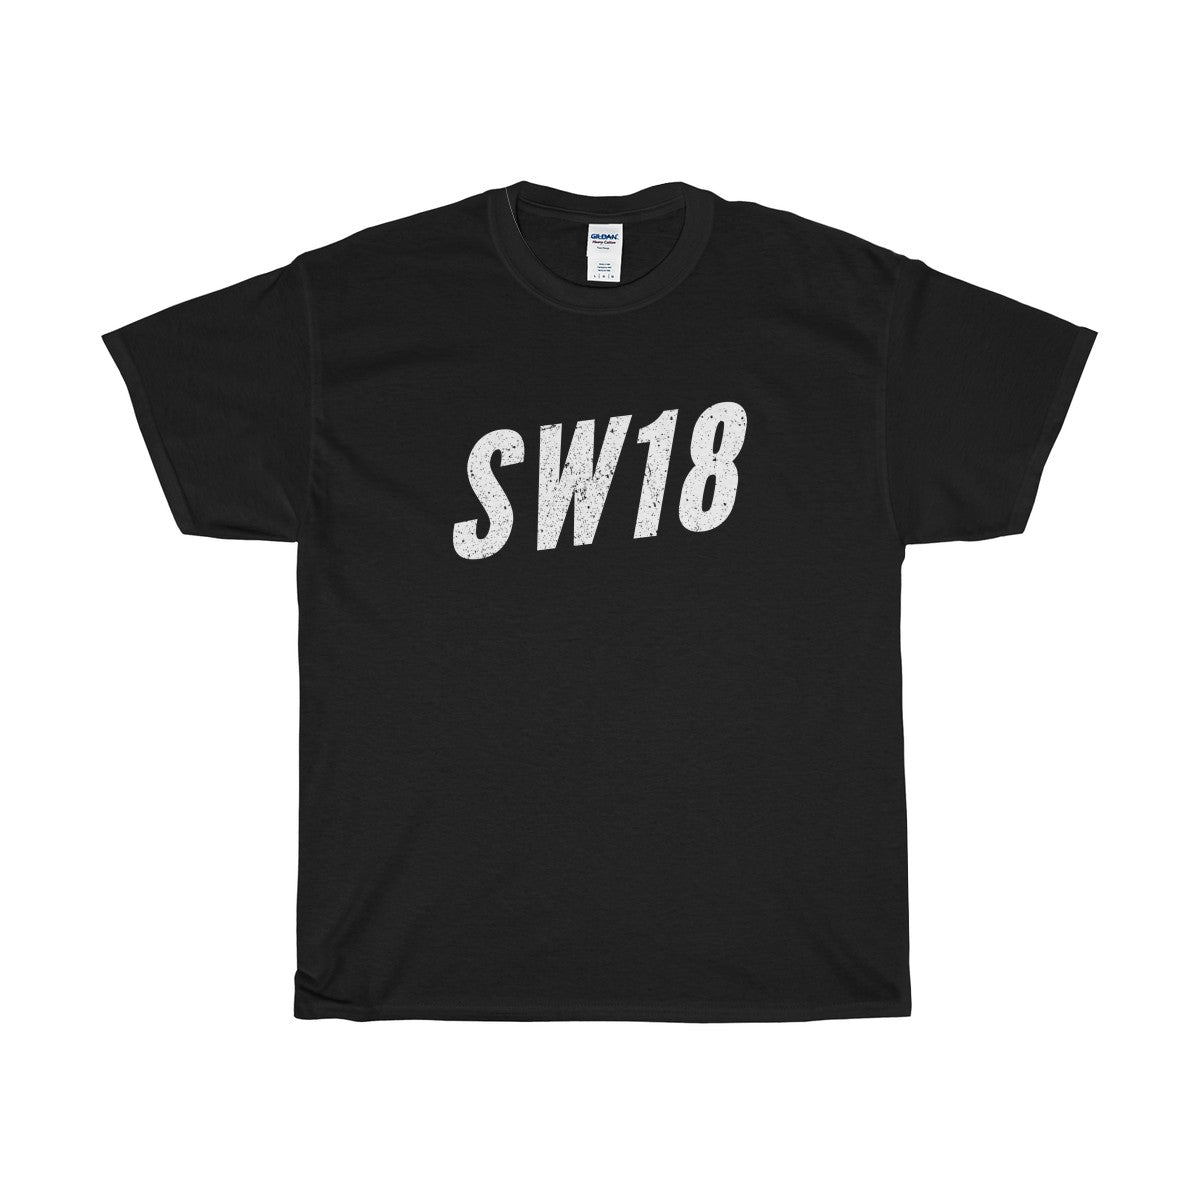 Earlsfield SW18 T-Shirt